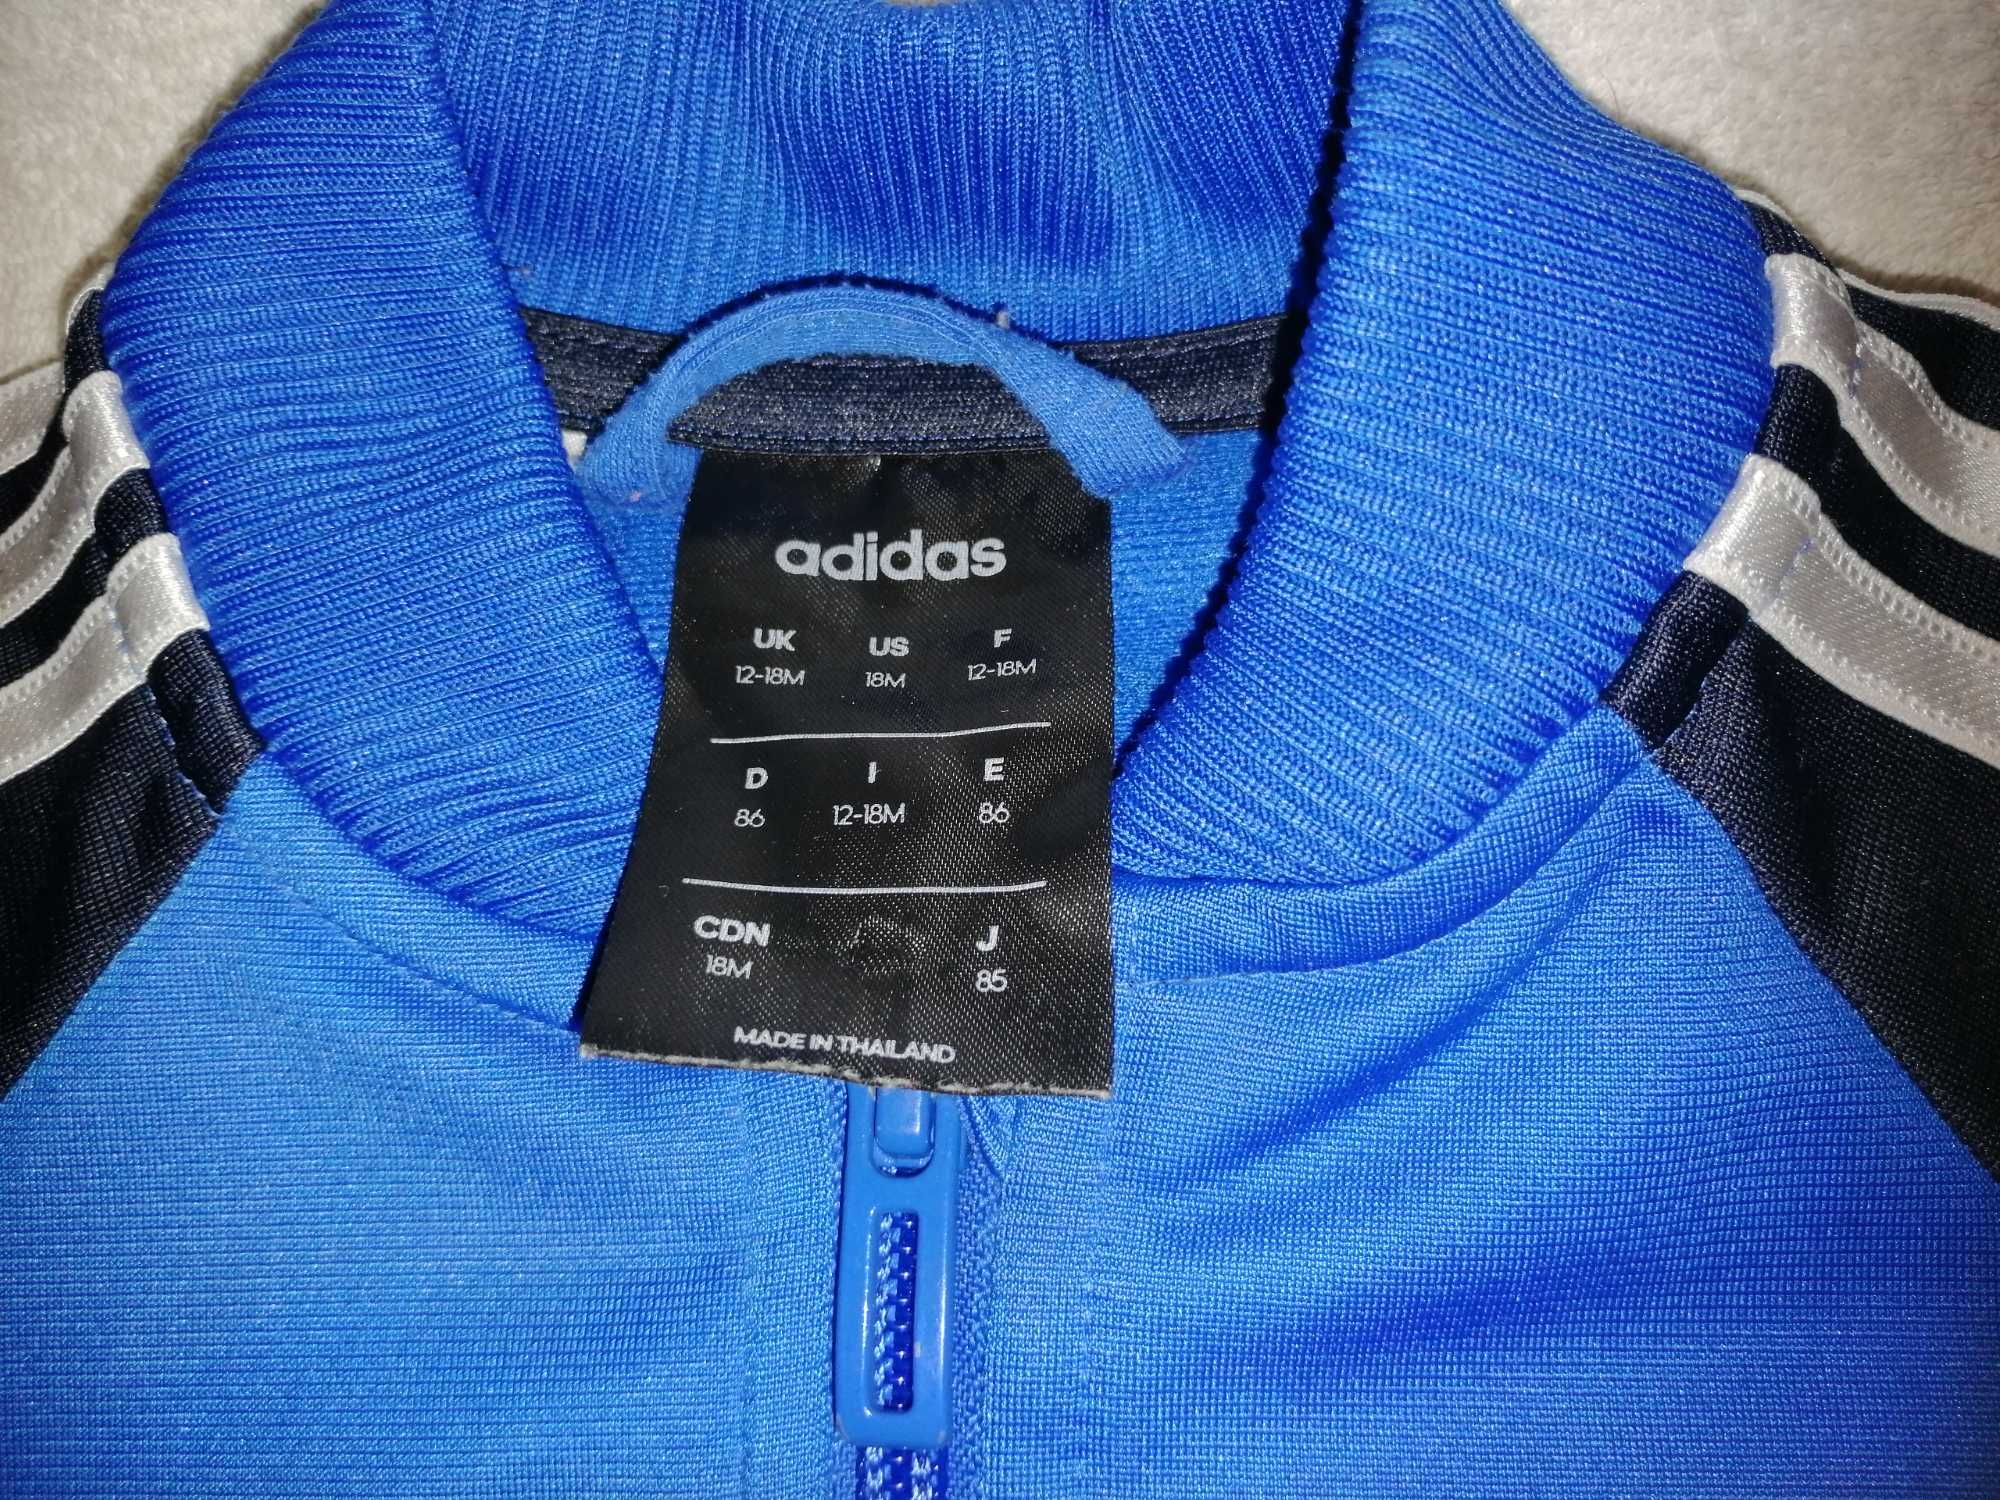 Adidas dresik 12-18m original spodnie i bluza